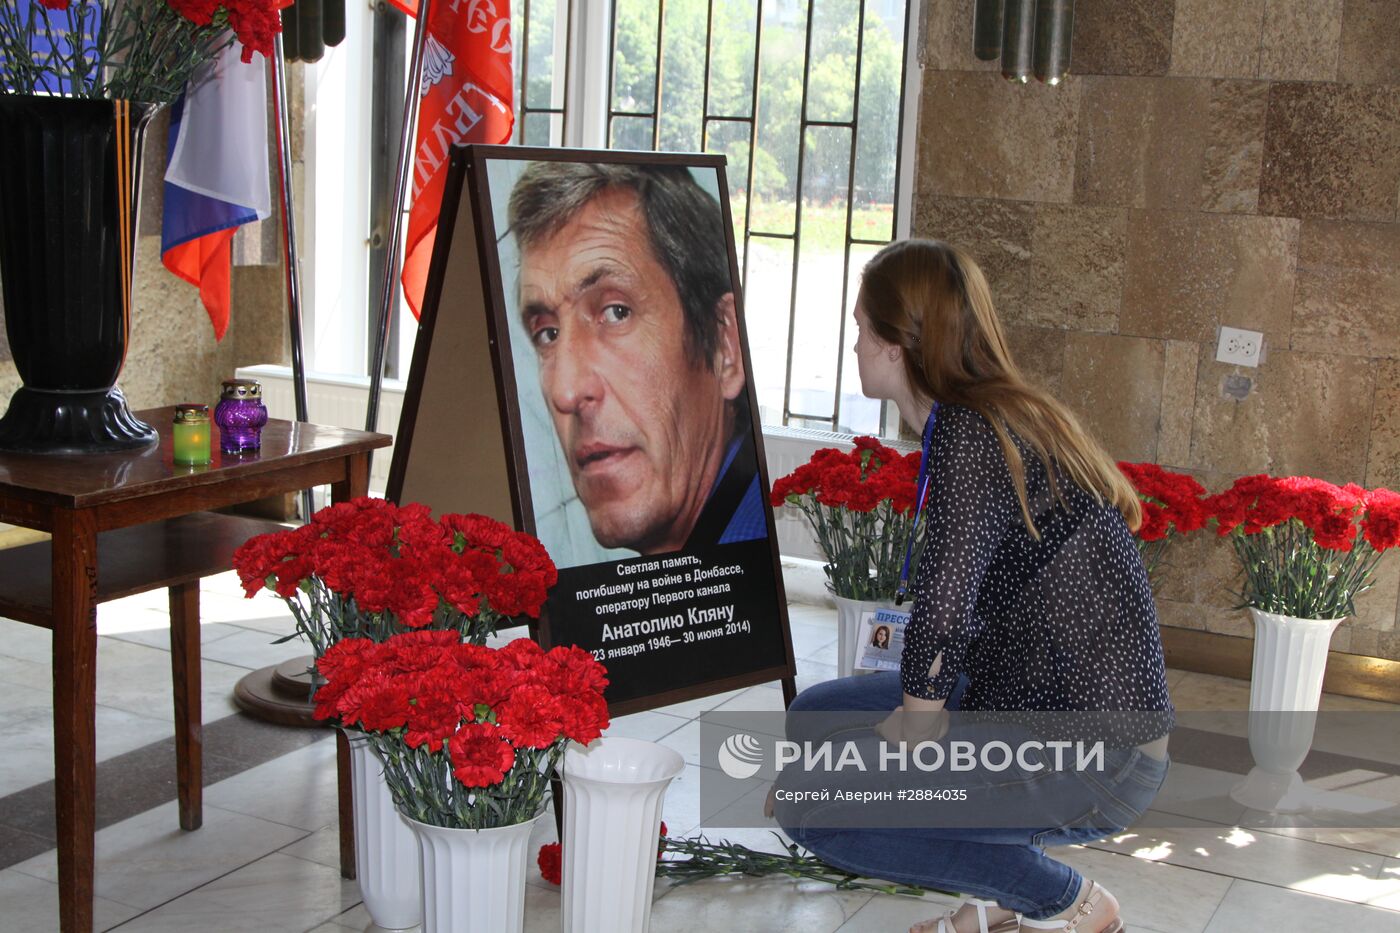 Памятные мероприятия в честь оператора "Первого канала" Анатолия Кляна, погибшего в Донецке